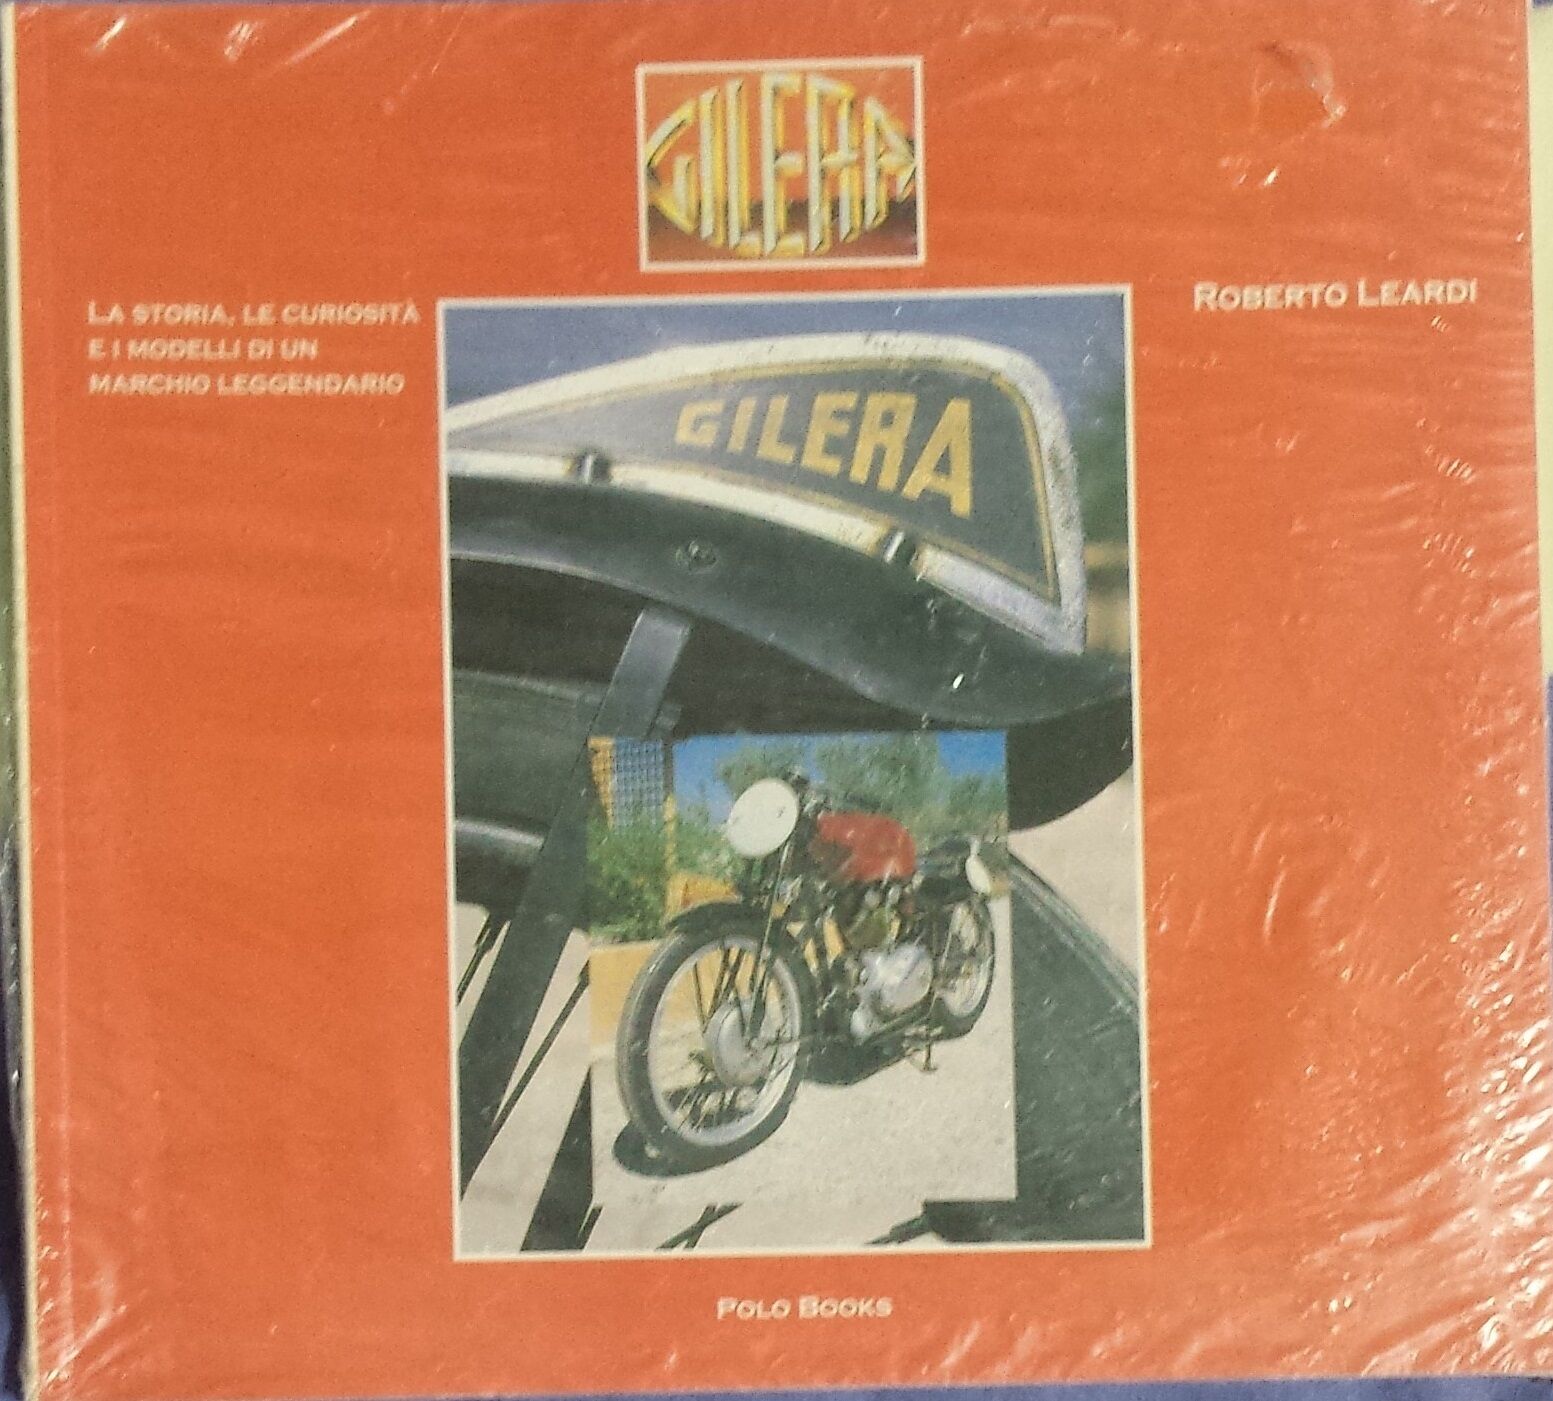 Gilera - Leardi Roberto - Polo Books - 2004 - G